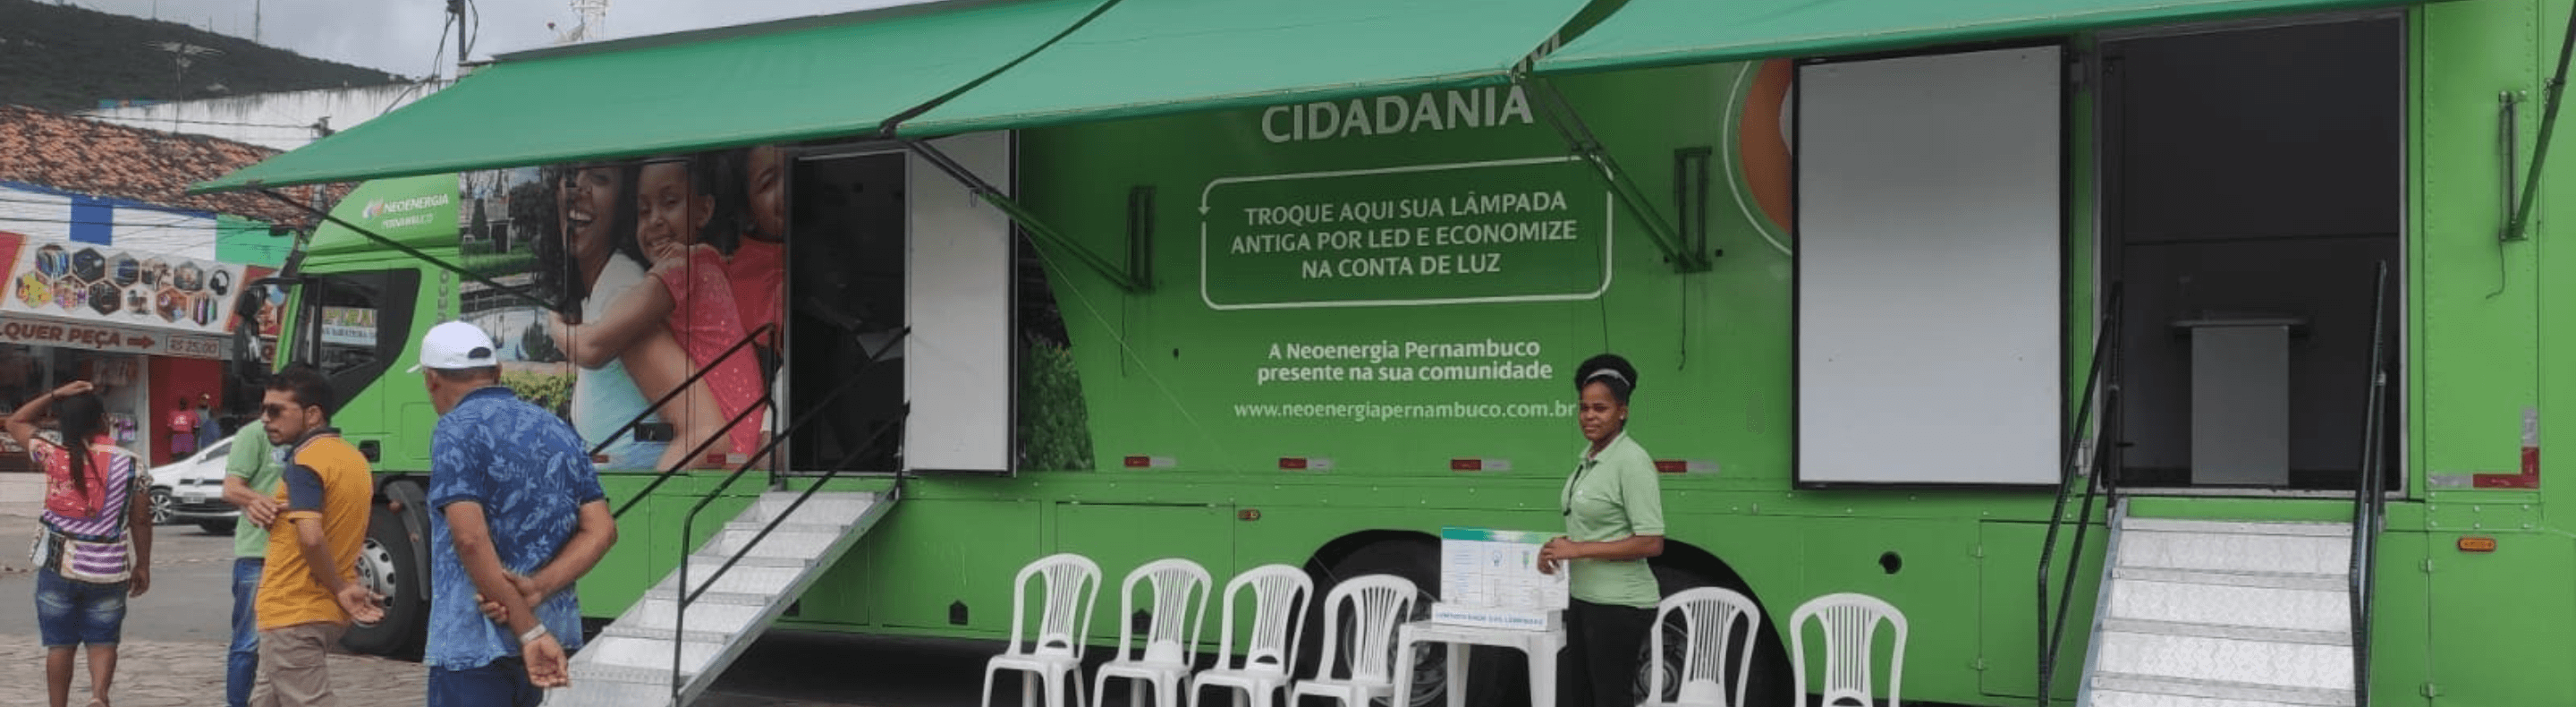 Caminhão verde do Projeto Energia Com Cidadania da Neoenergia Pernambuco estacionado atendendo clientes